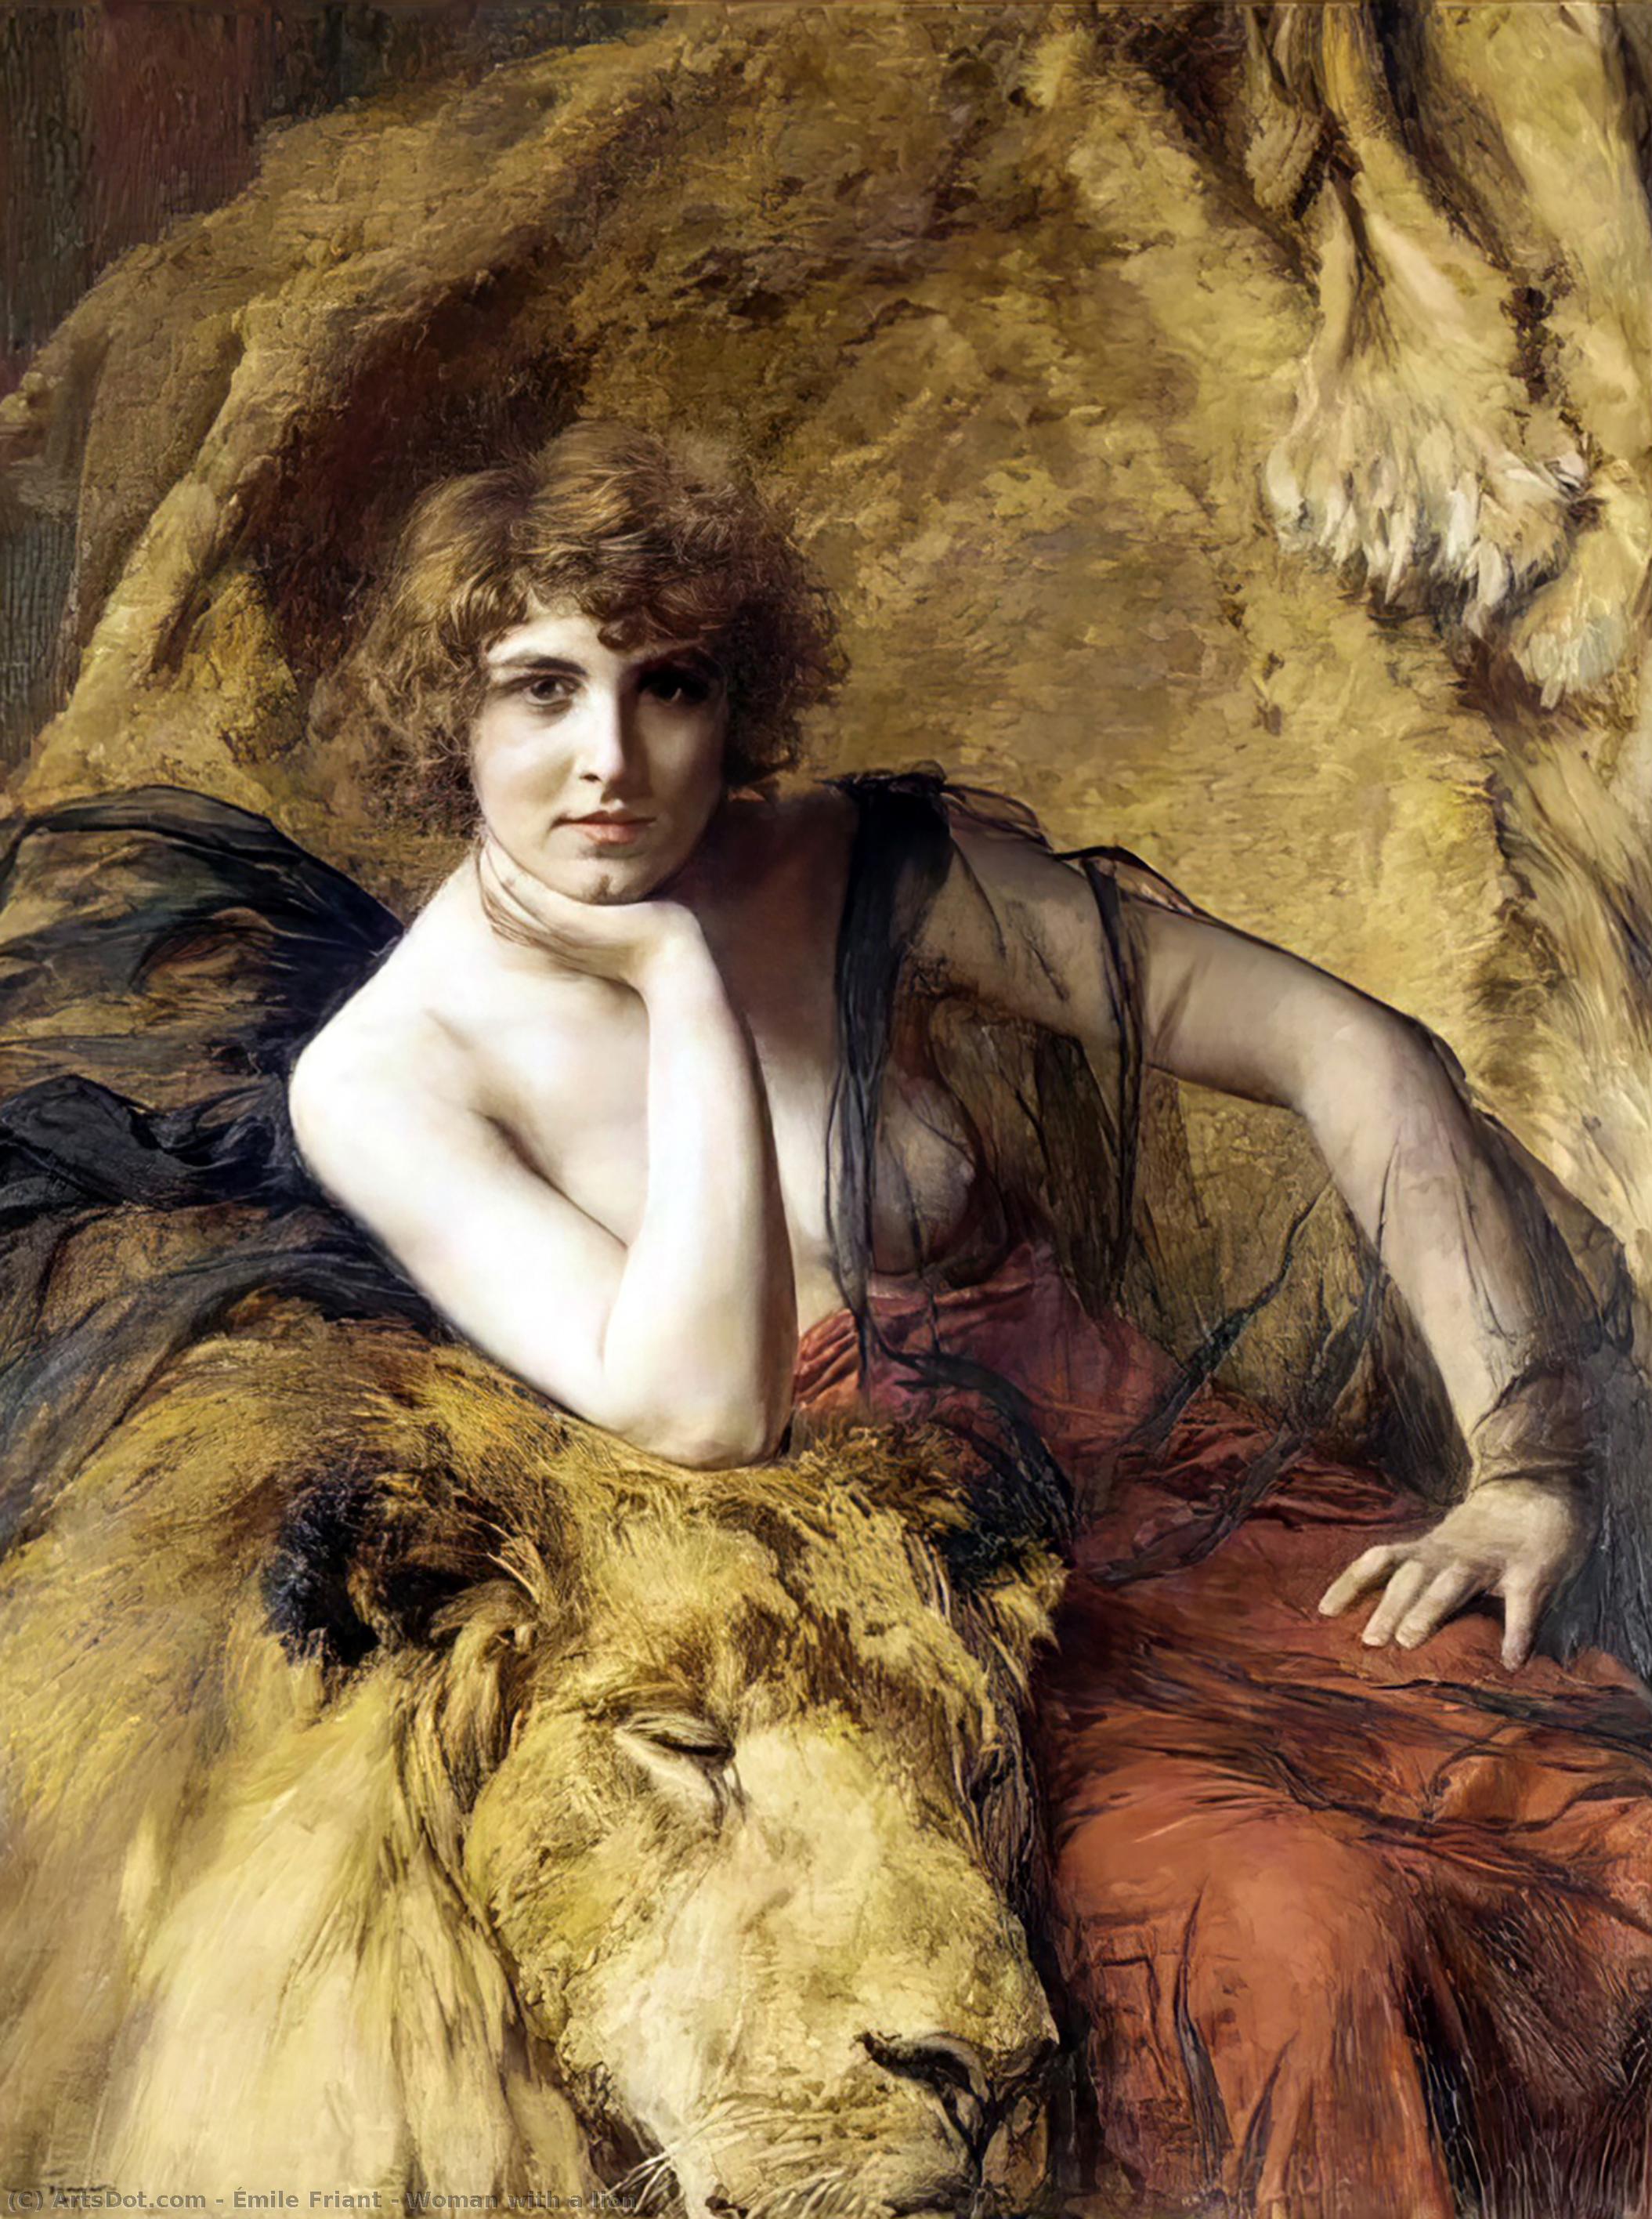 WikiOO.org - Enciclopédia das Belas Artes - Pintura, Arte por Émile Friant - Woman with a lion